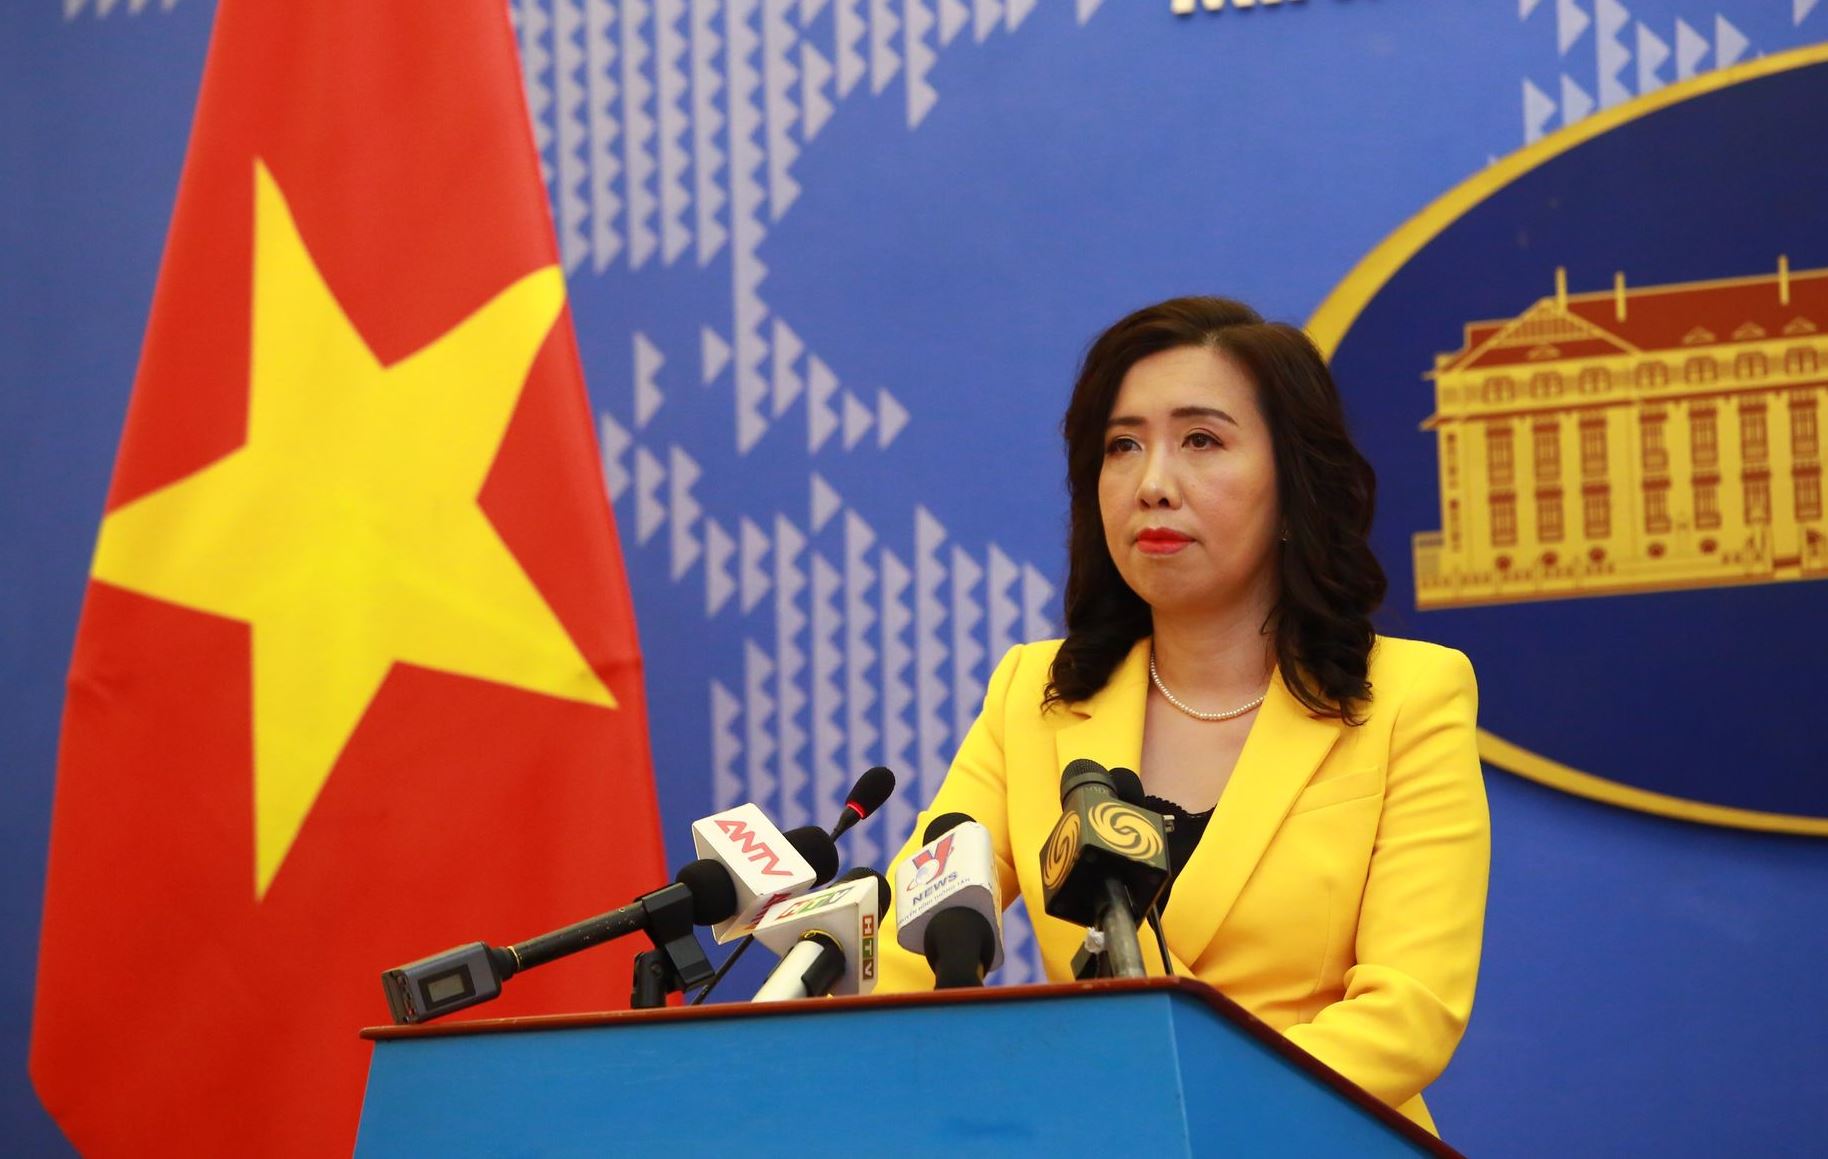 Việt Nam đã tích cực tham gia vào giải quyết căng thẳng Mỹ-Trung vì Đài Loan, đưa ra các phương án và giải pháp hợp tác nhằm thúc đẩy hòa bình và ổn định khu vực. Việc này chắc chắn sẽ làm tăng uy tín và định vị của Việt Nam trong cộng đồng quốc tế.